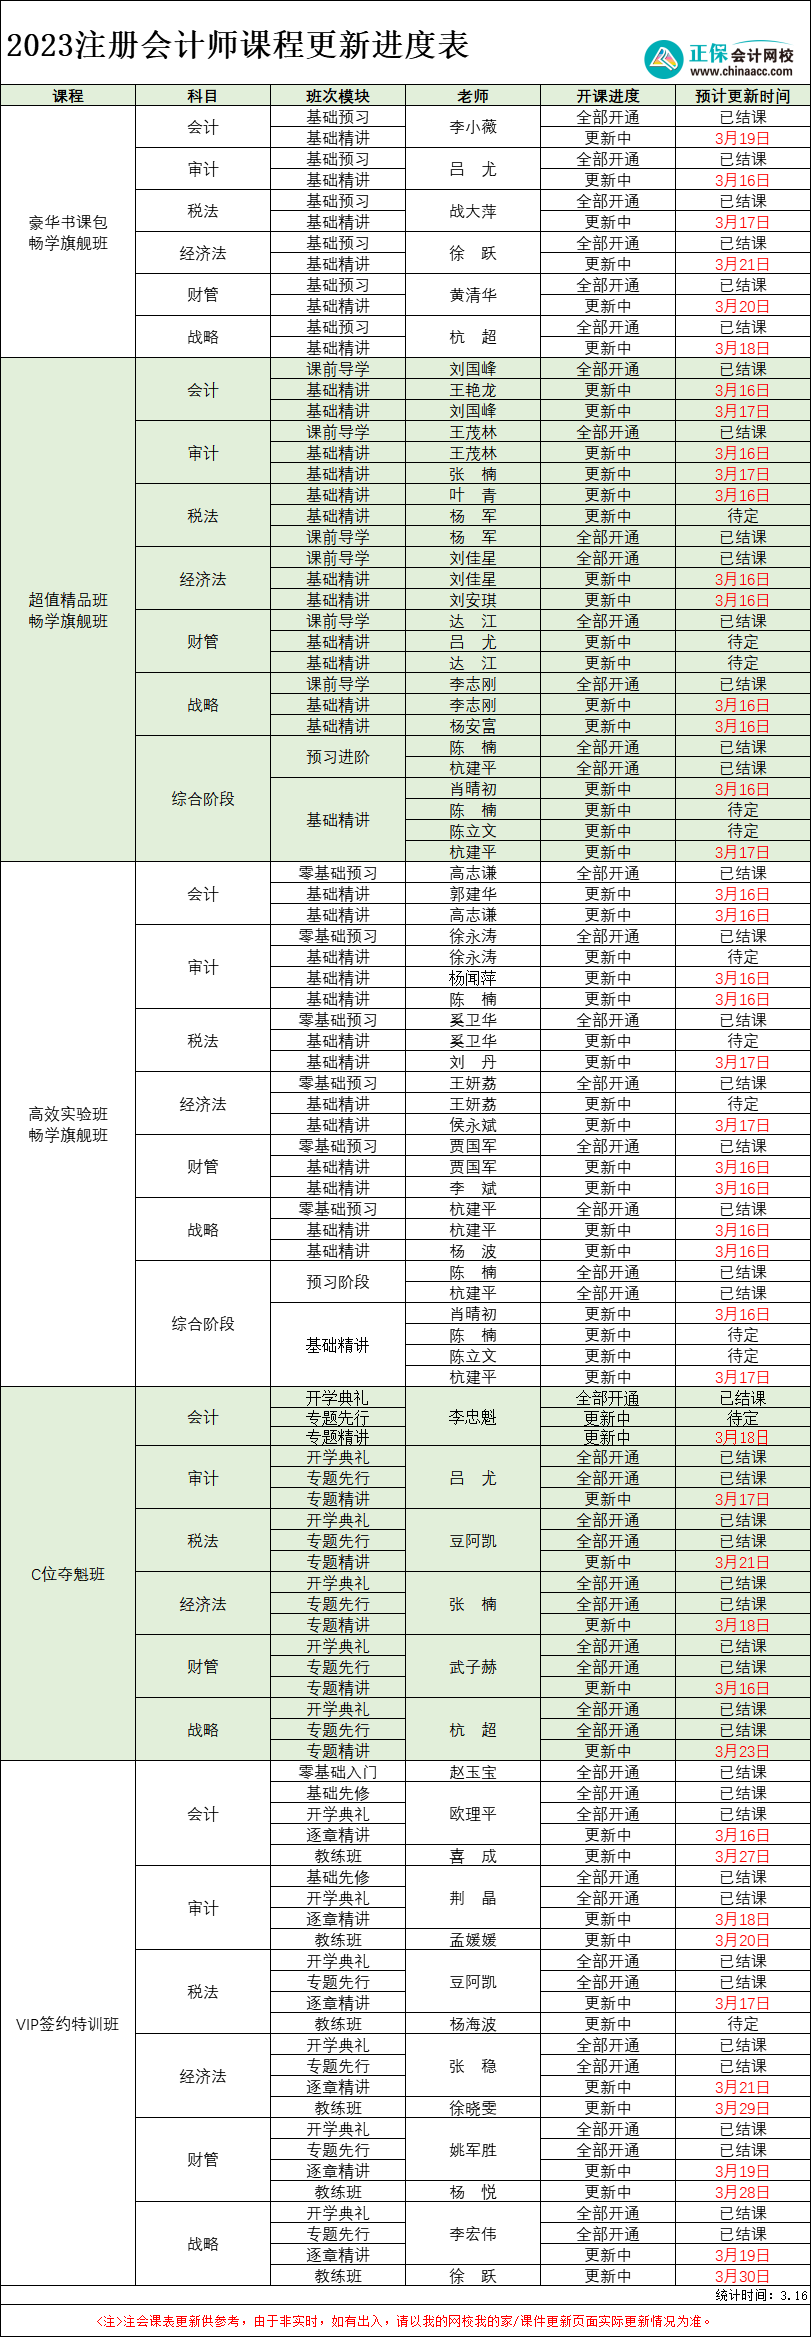 【速看】2023年注册会计师各班次课程更新进度表(3.16)